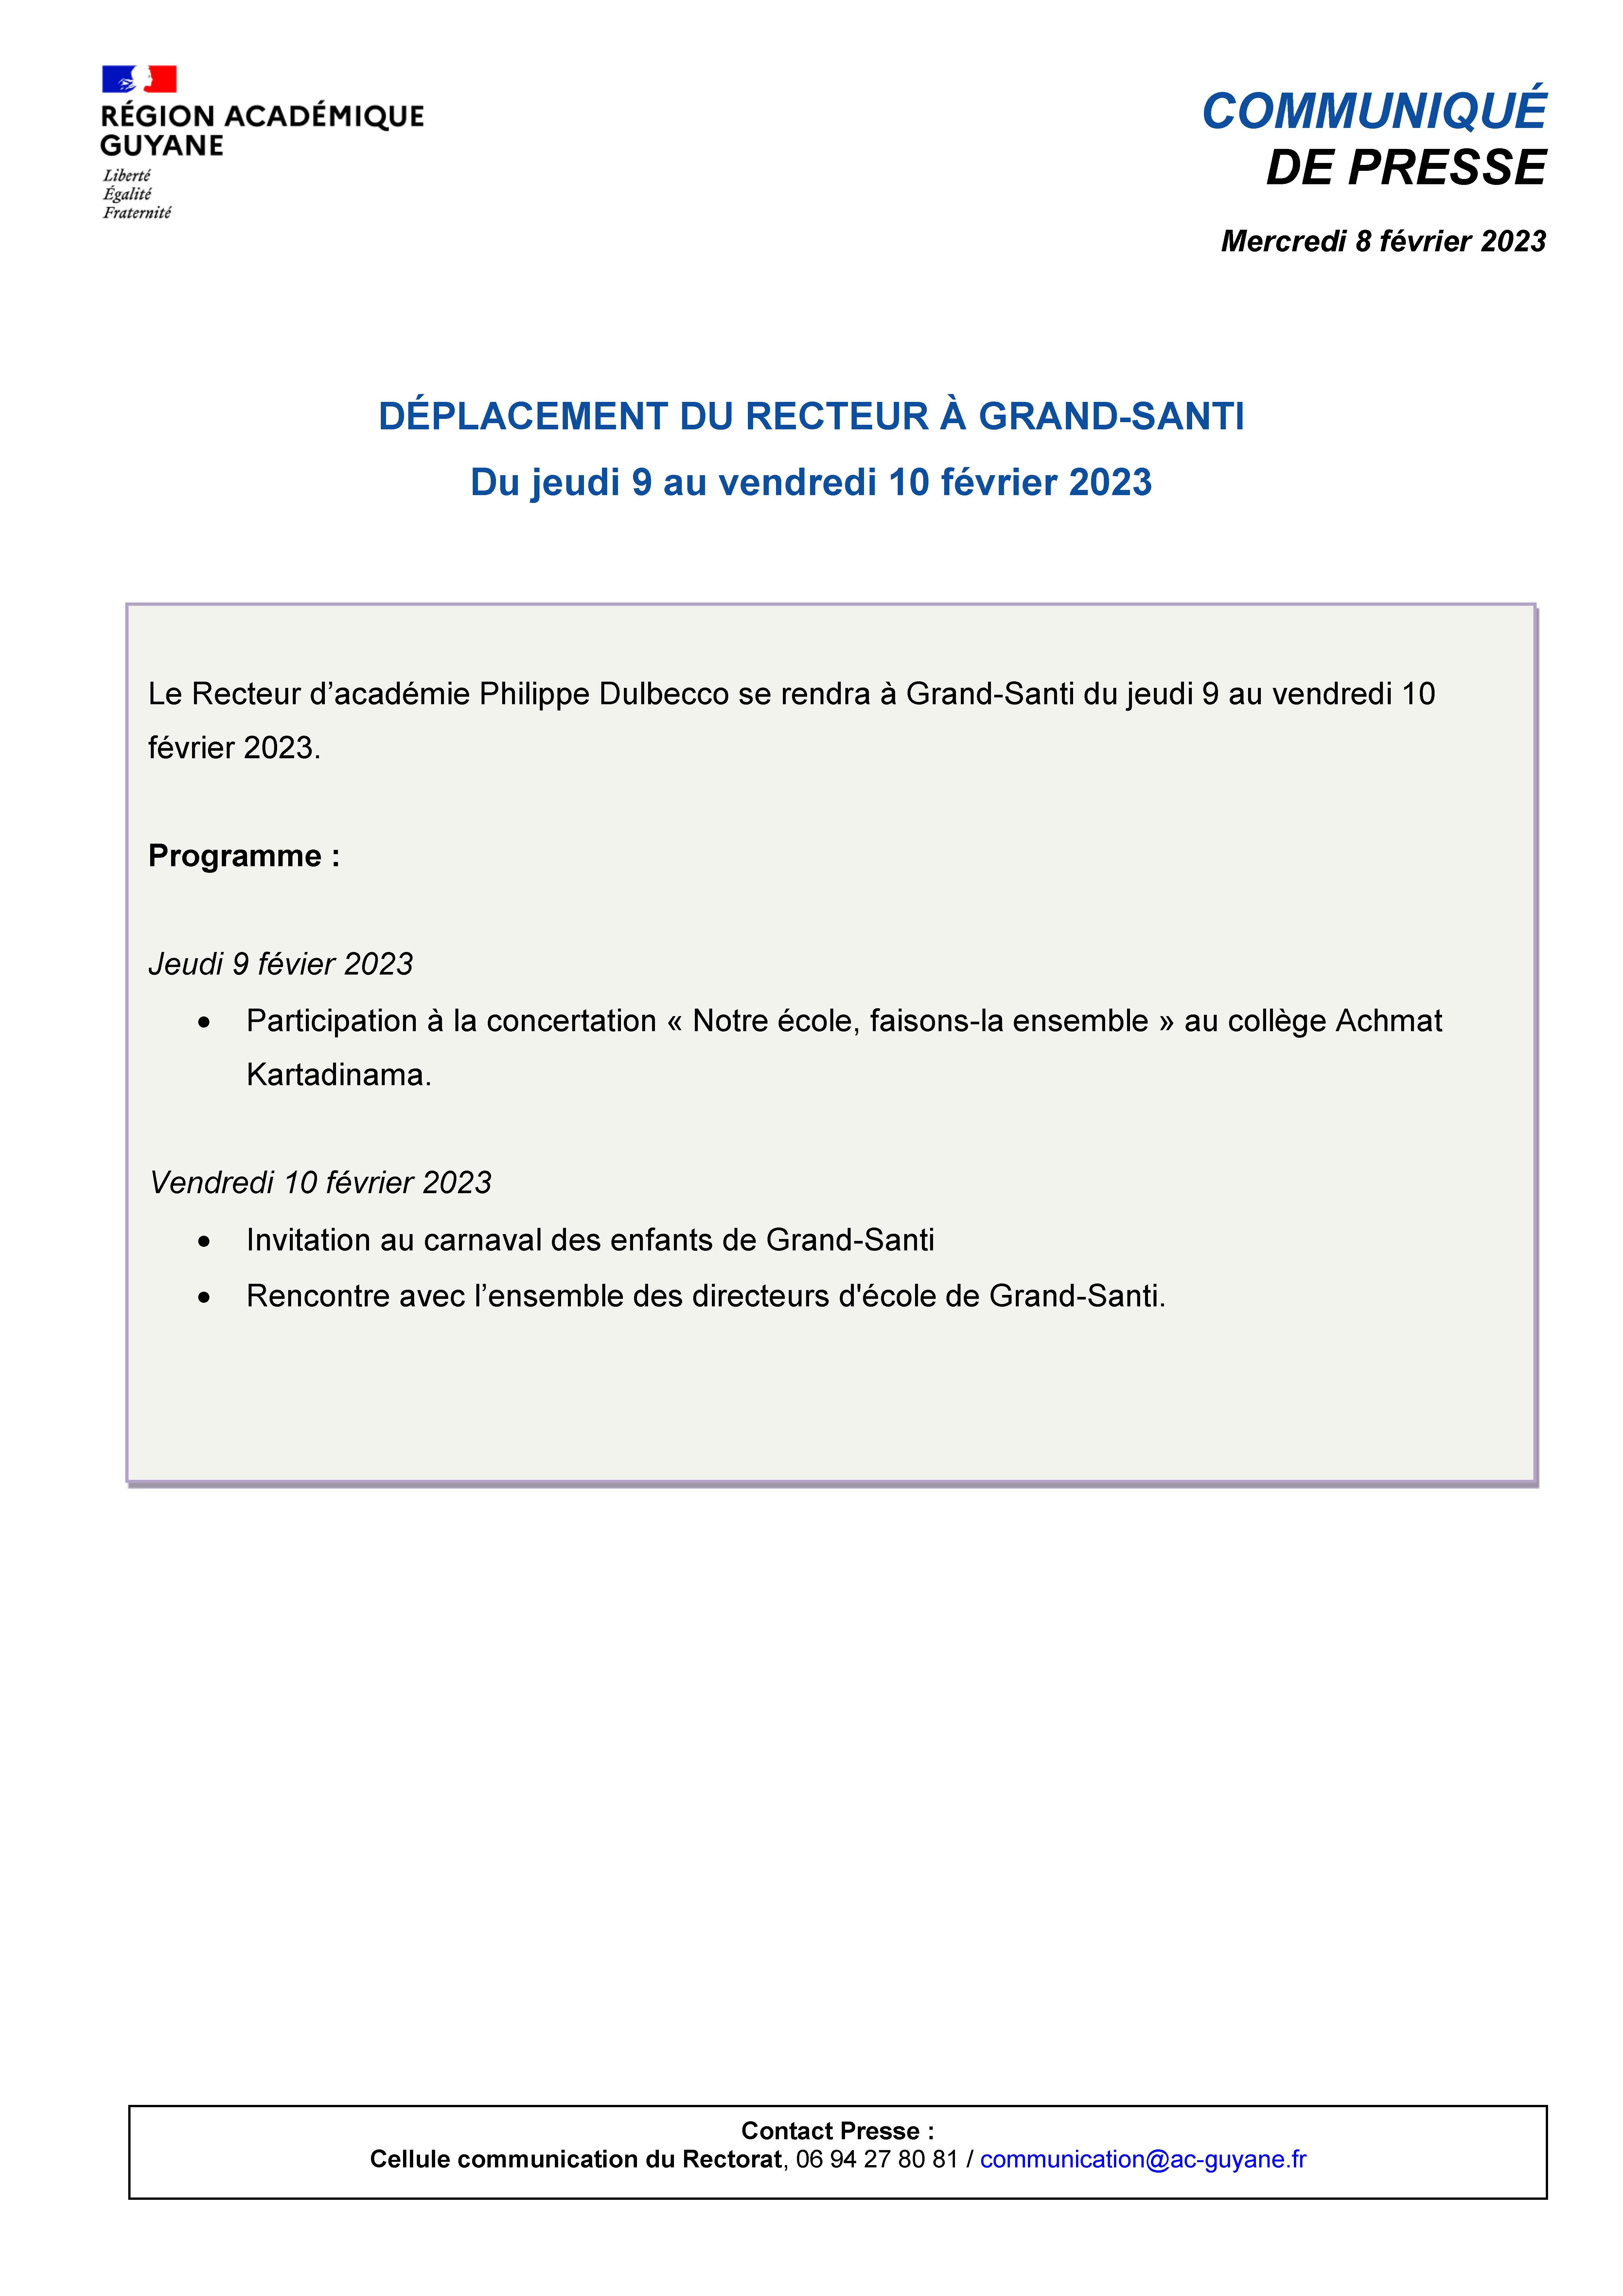 [CP] Déplacement du Recteur à Grand Santi - du 9 au 10 fevrier 2023